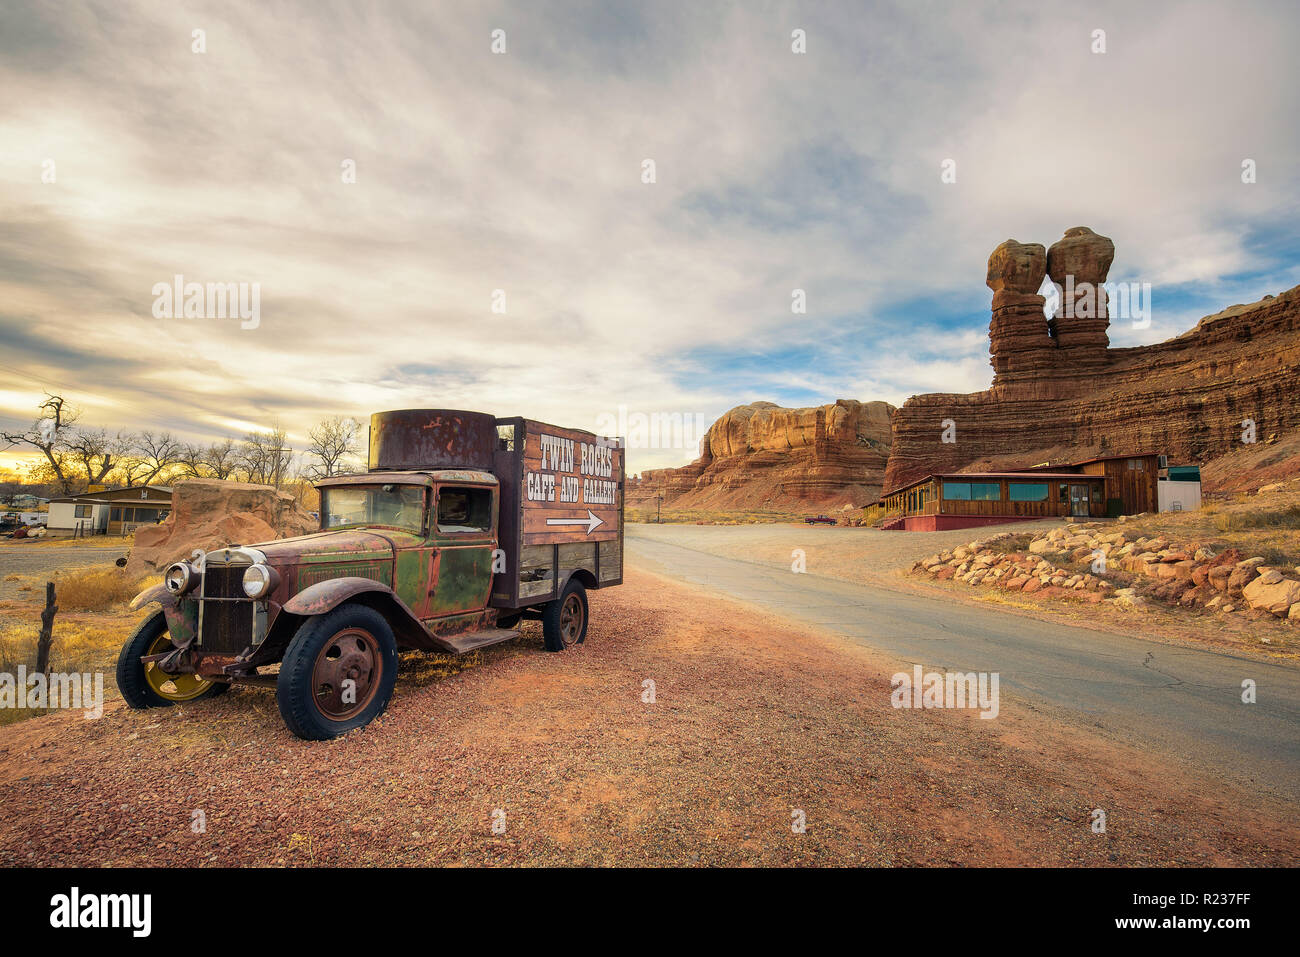 Camión antiguo con la publicidad para el Twin Rocks Café y Galería en Utah Foto de stock